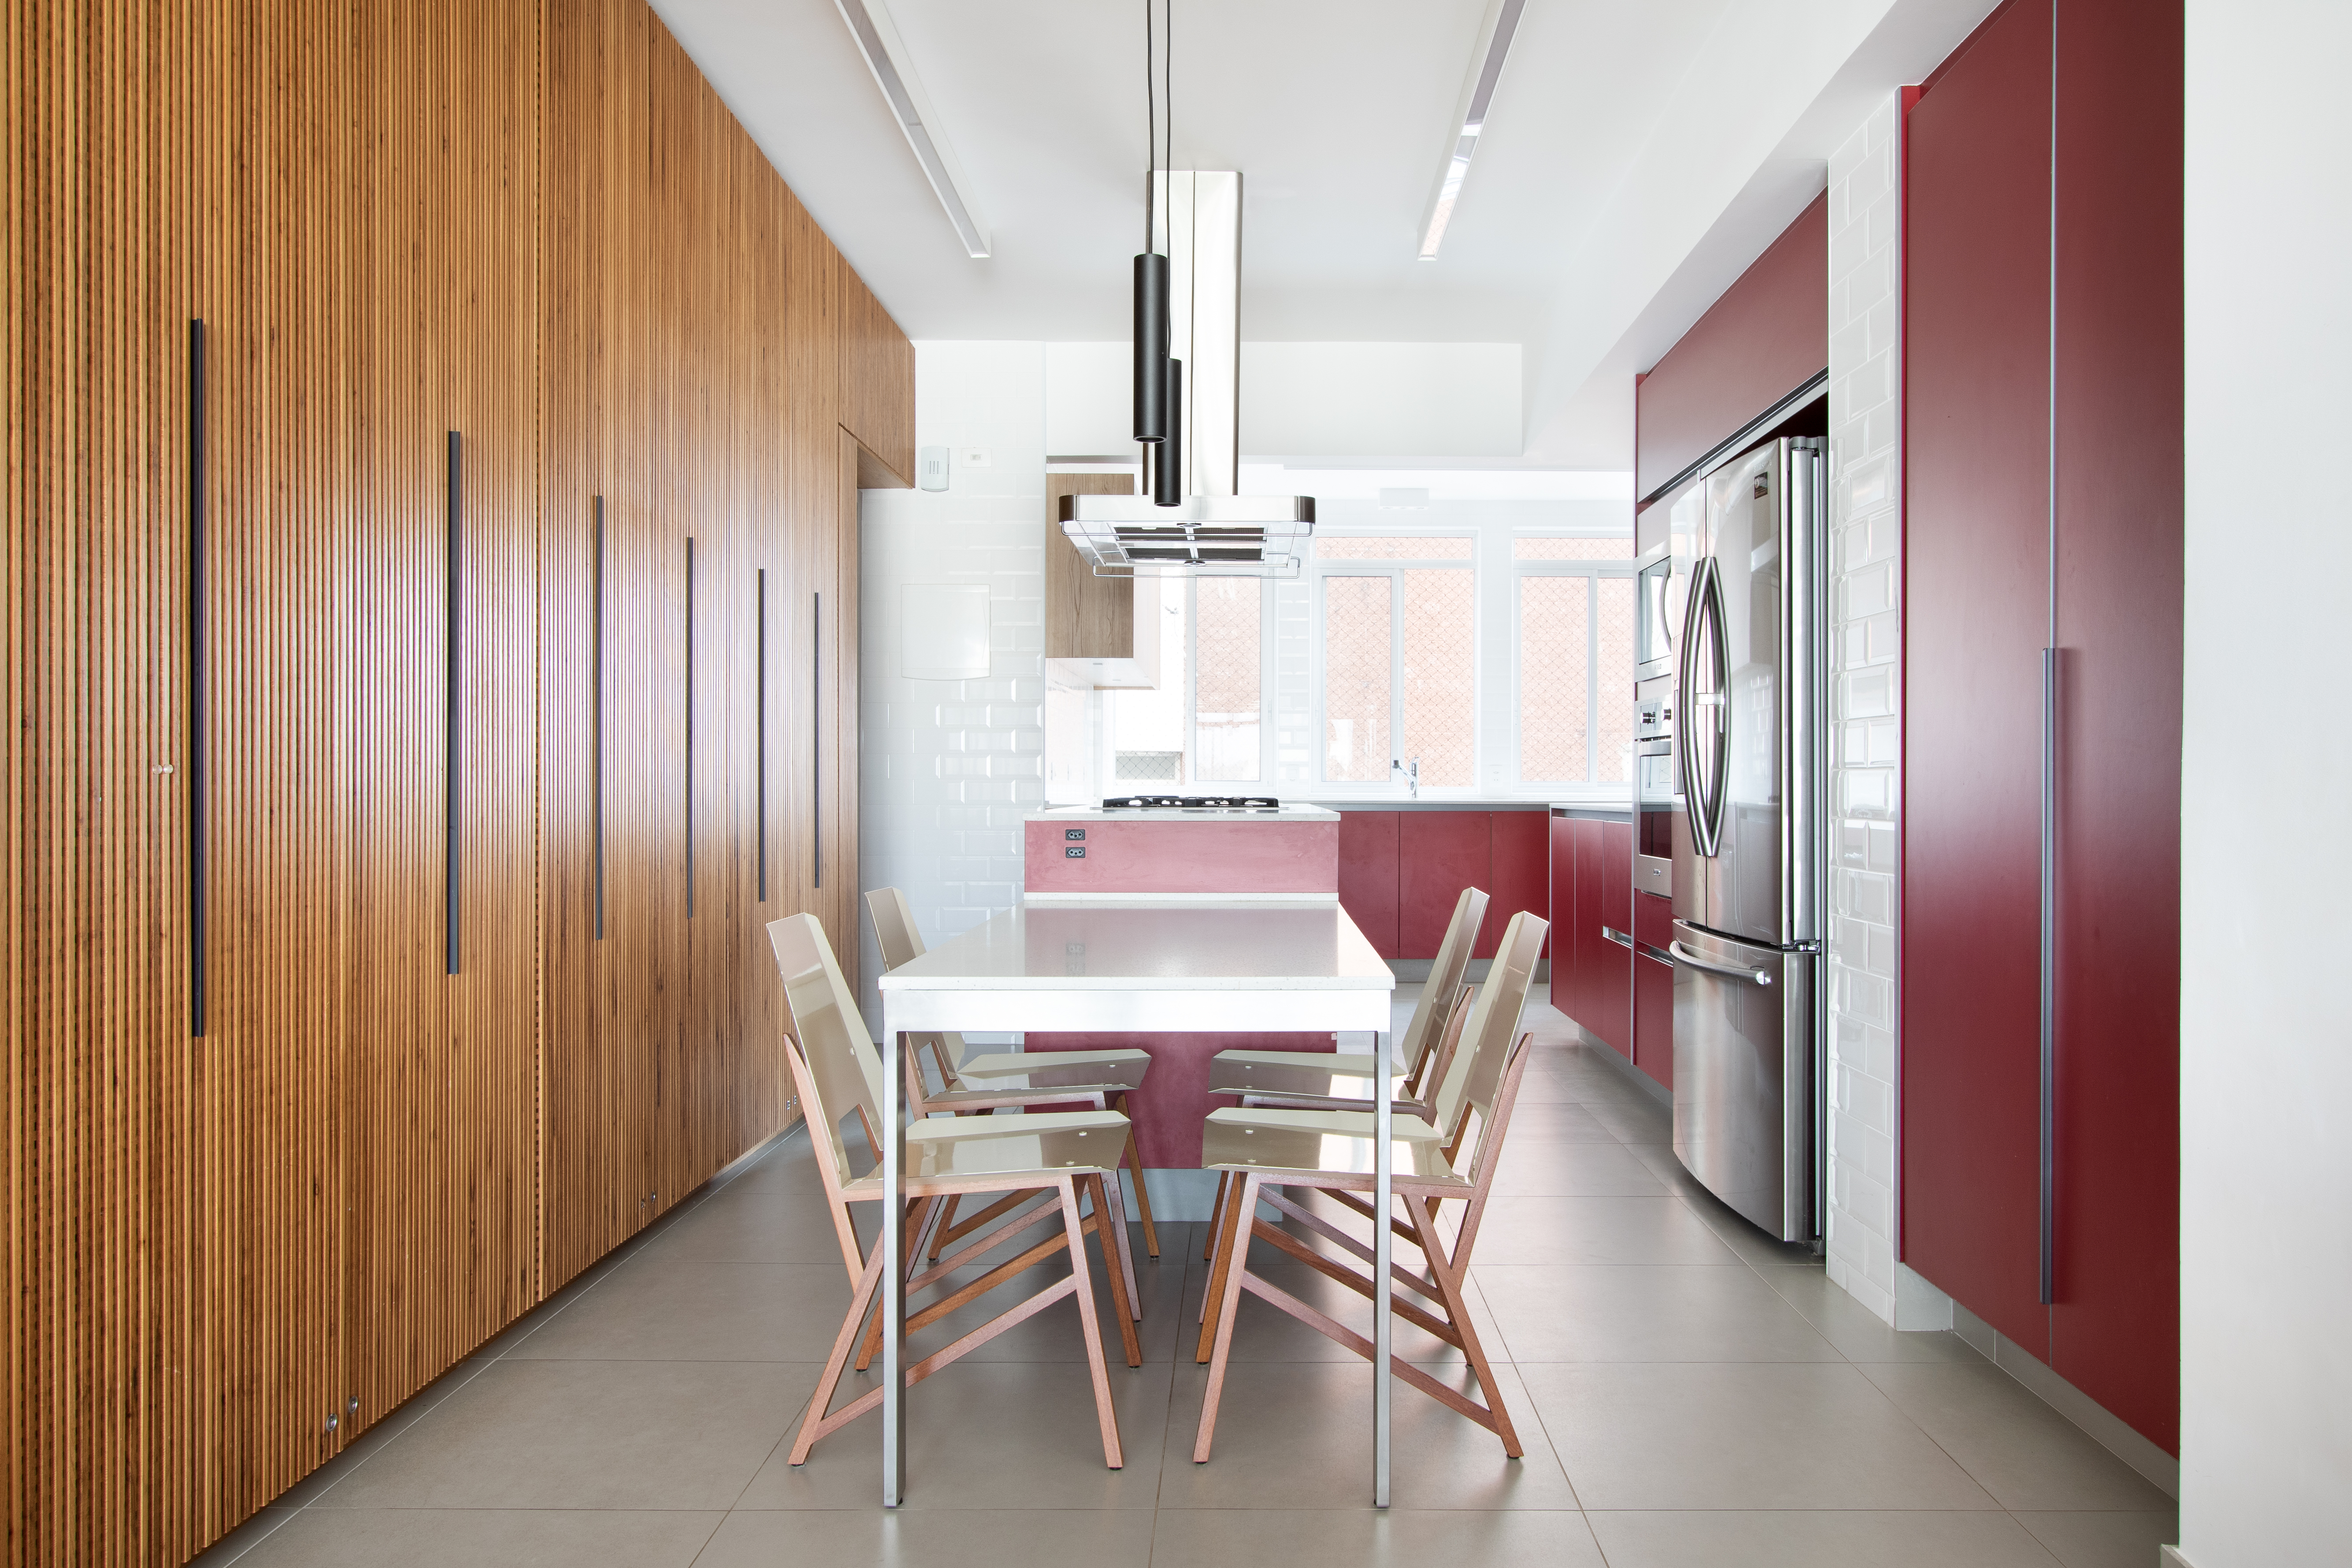  150 m²'lik dairede kırmızı mutfak ve ankastre şarap mahzeni bulunmaktadır